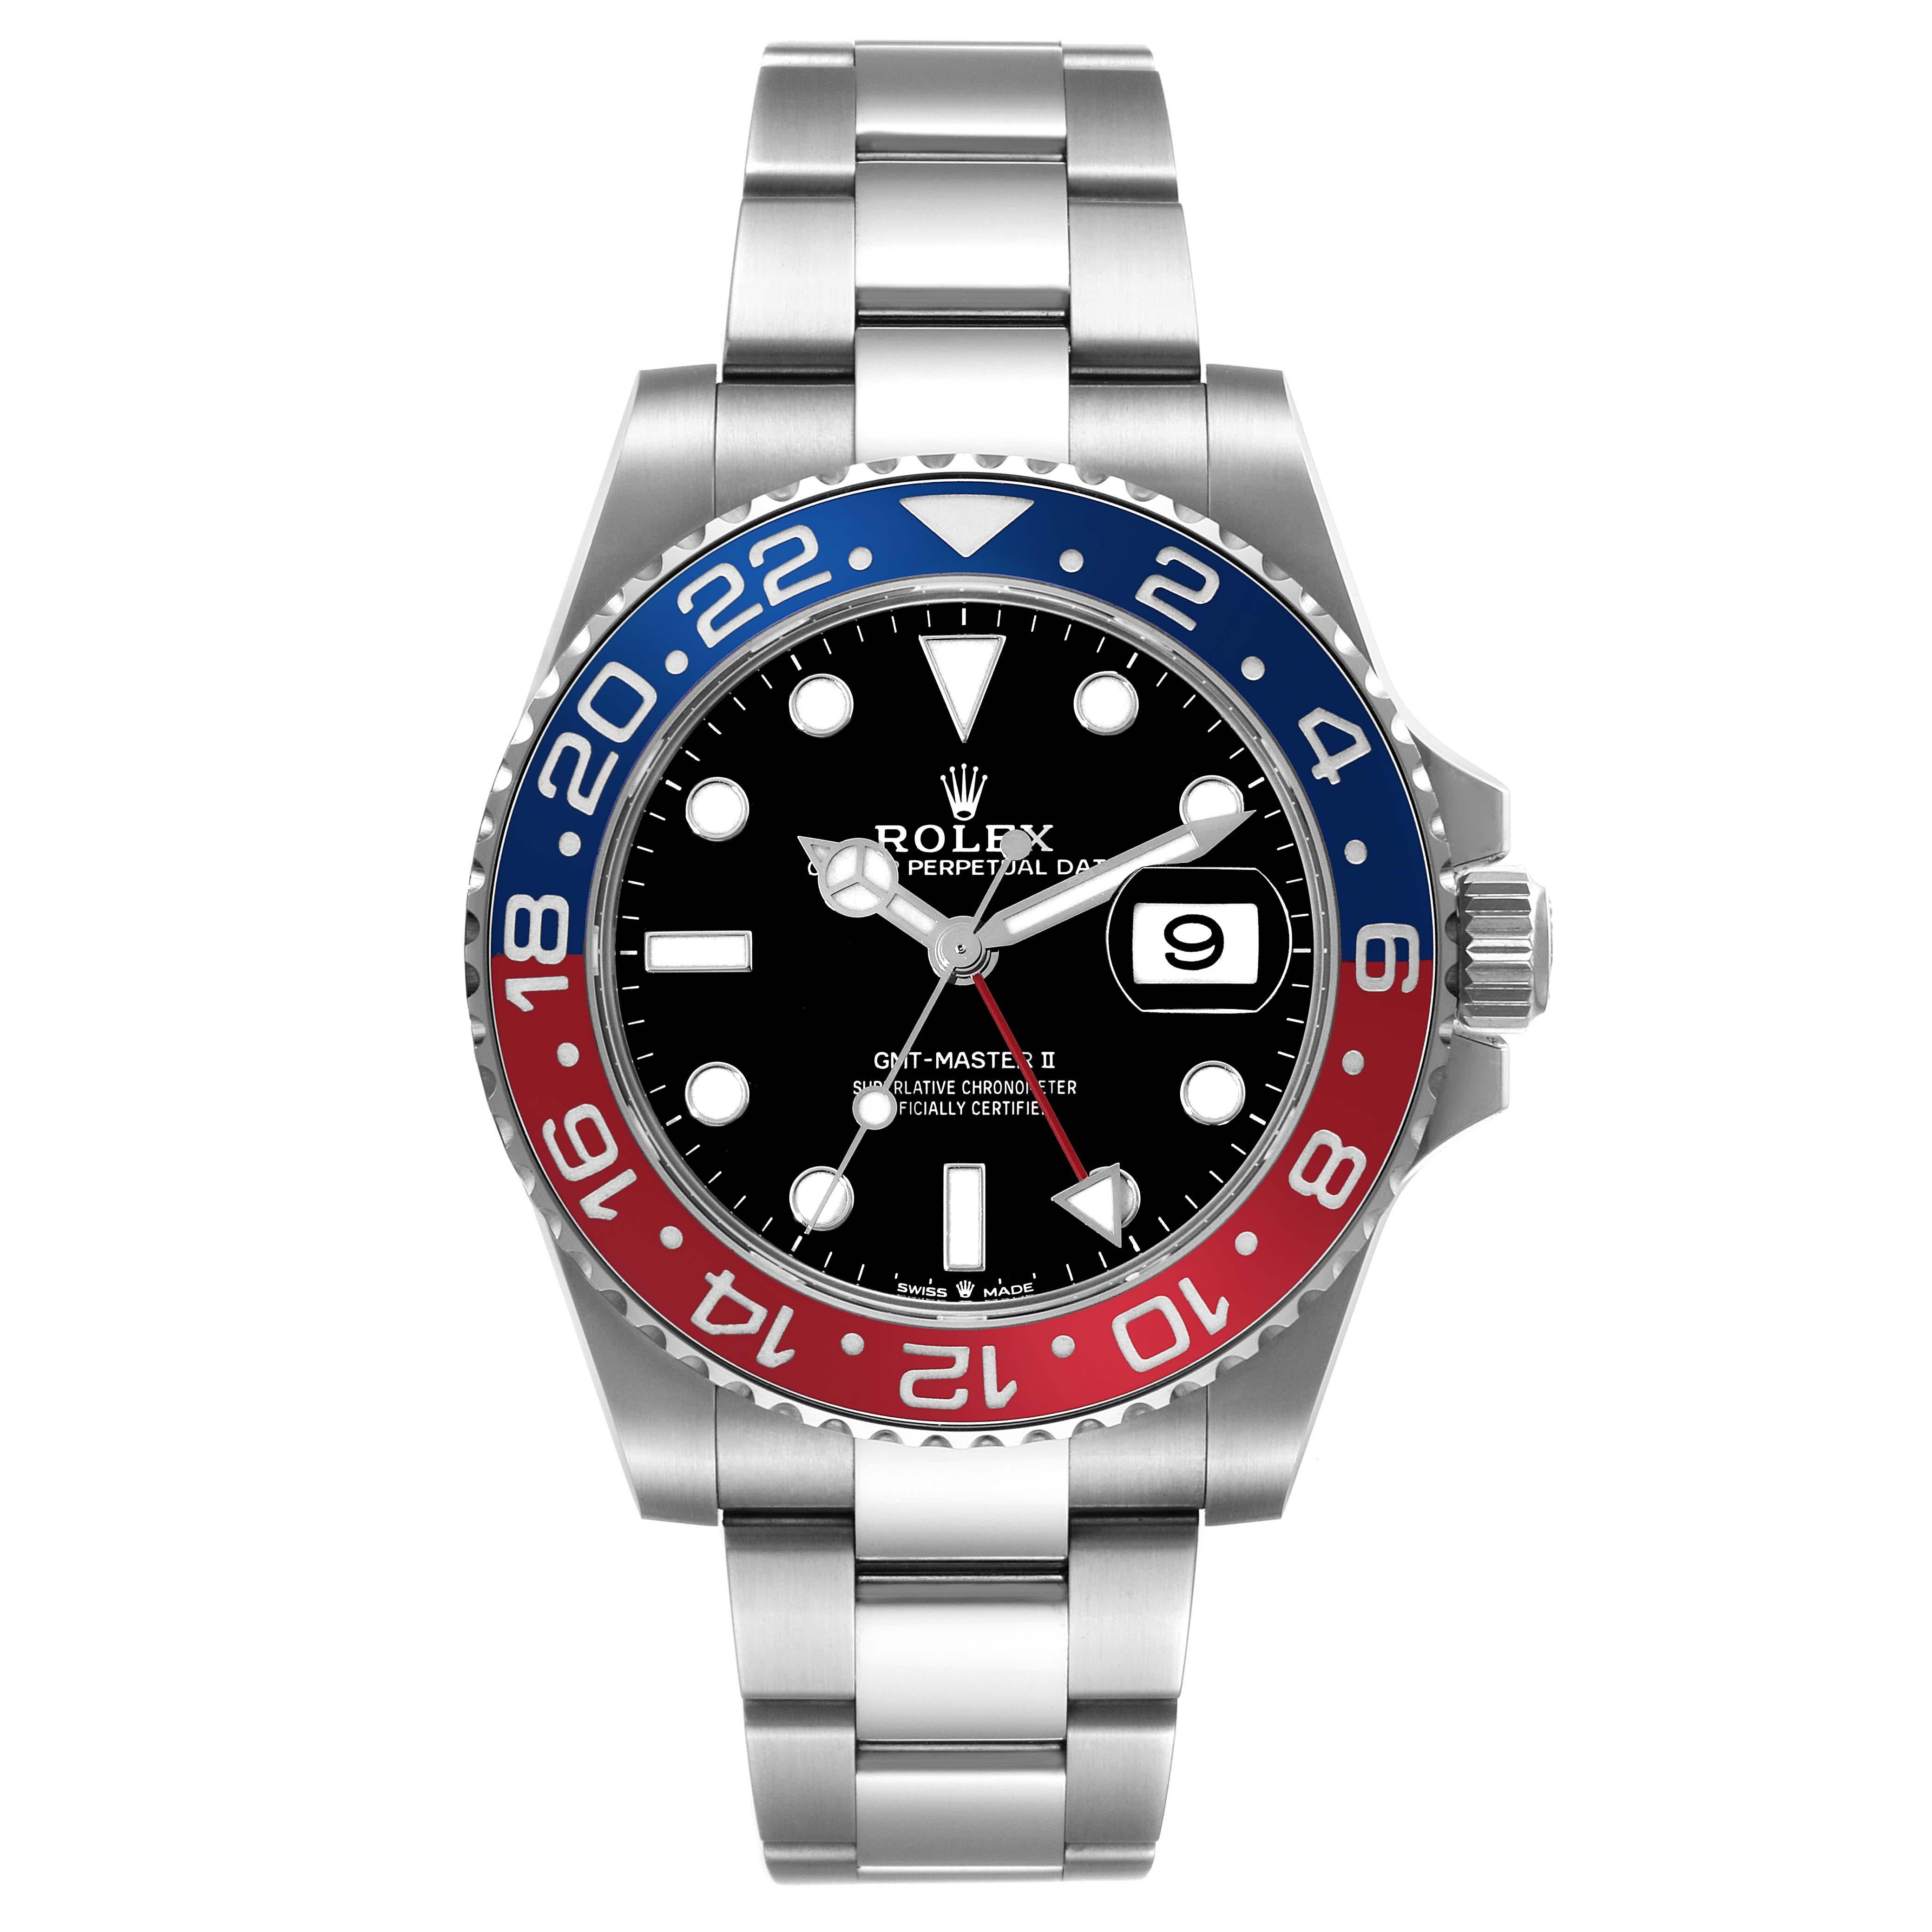 Rolex GMT Master II Blue Red Pepsi Bezel Steel Mens Watch 126710. Mouvement automatique à remontage automatique, officiellement certifié chronomètre. Boîtier en acier inoxydable de 40 mm de diamètre. Logo Rolex sur la couronne. Lunette tournante